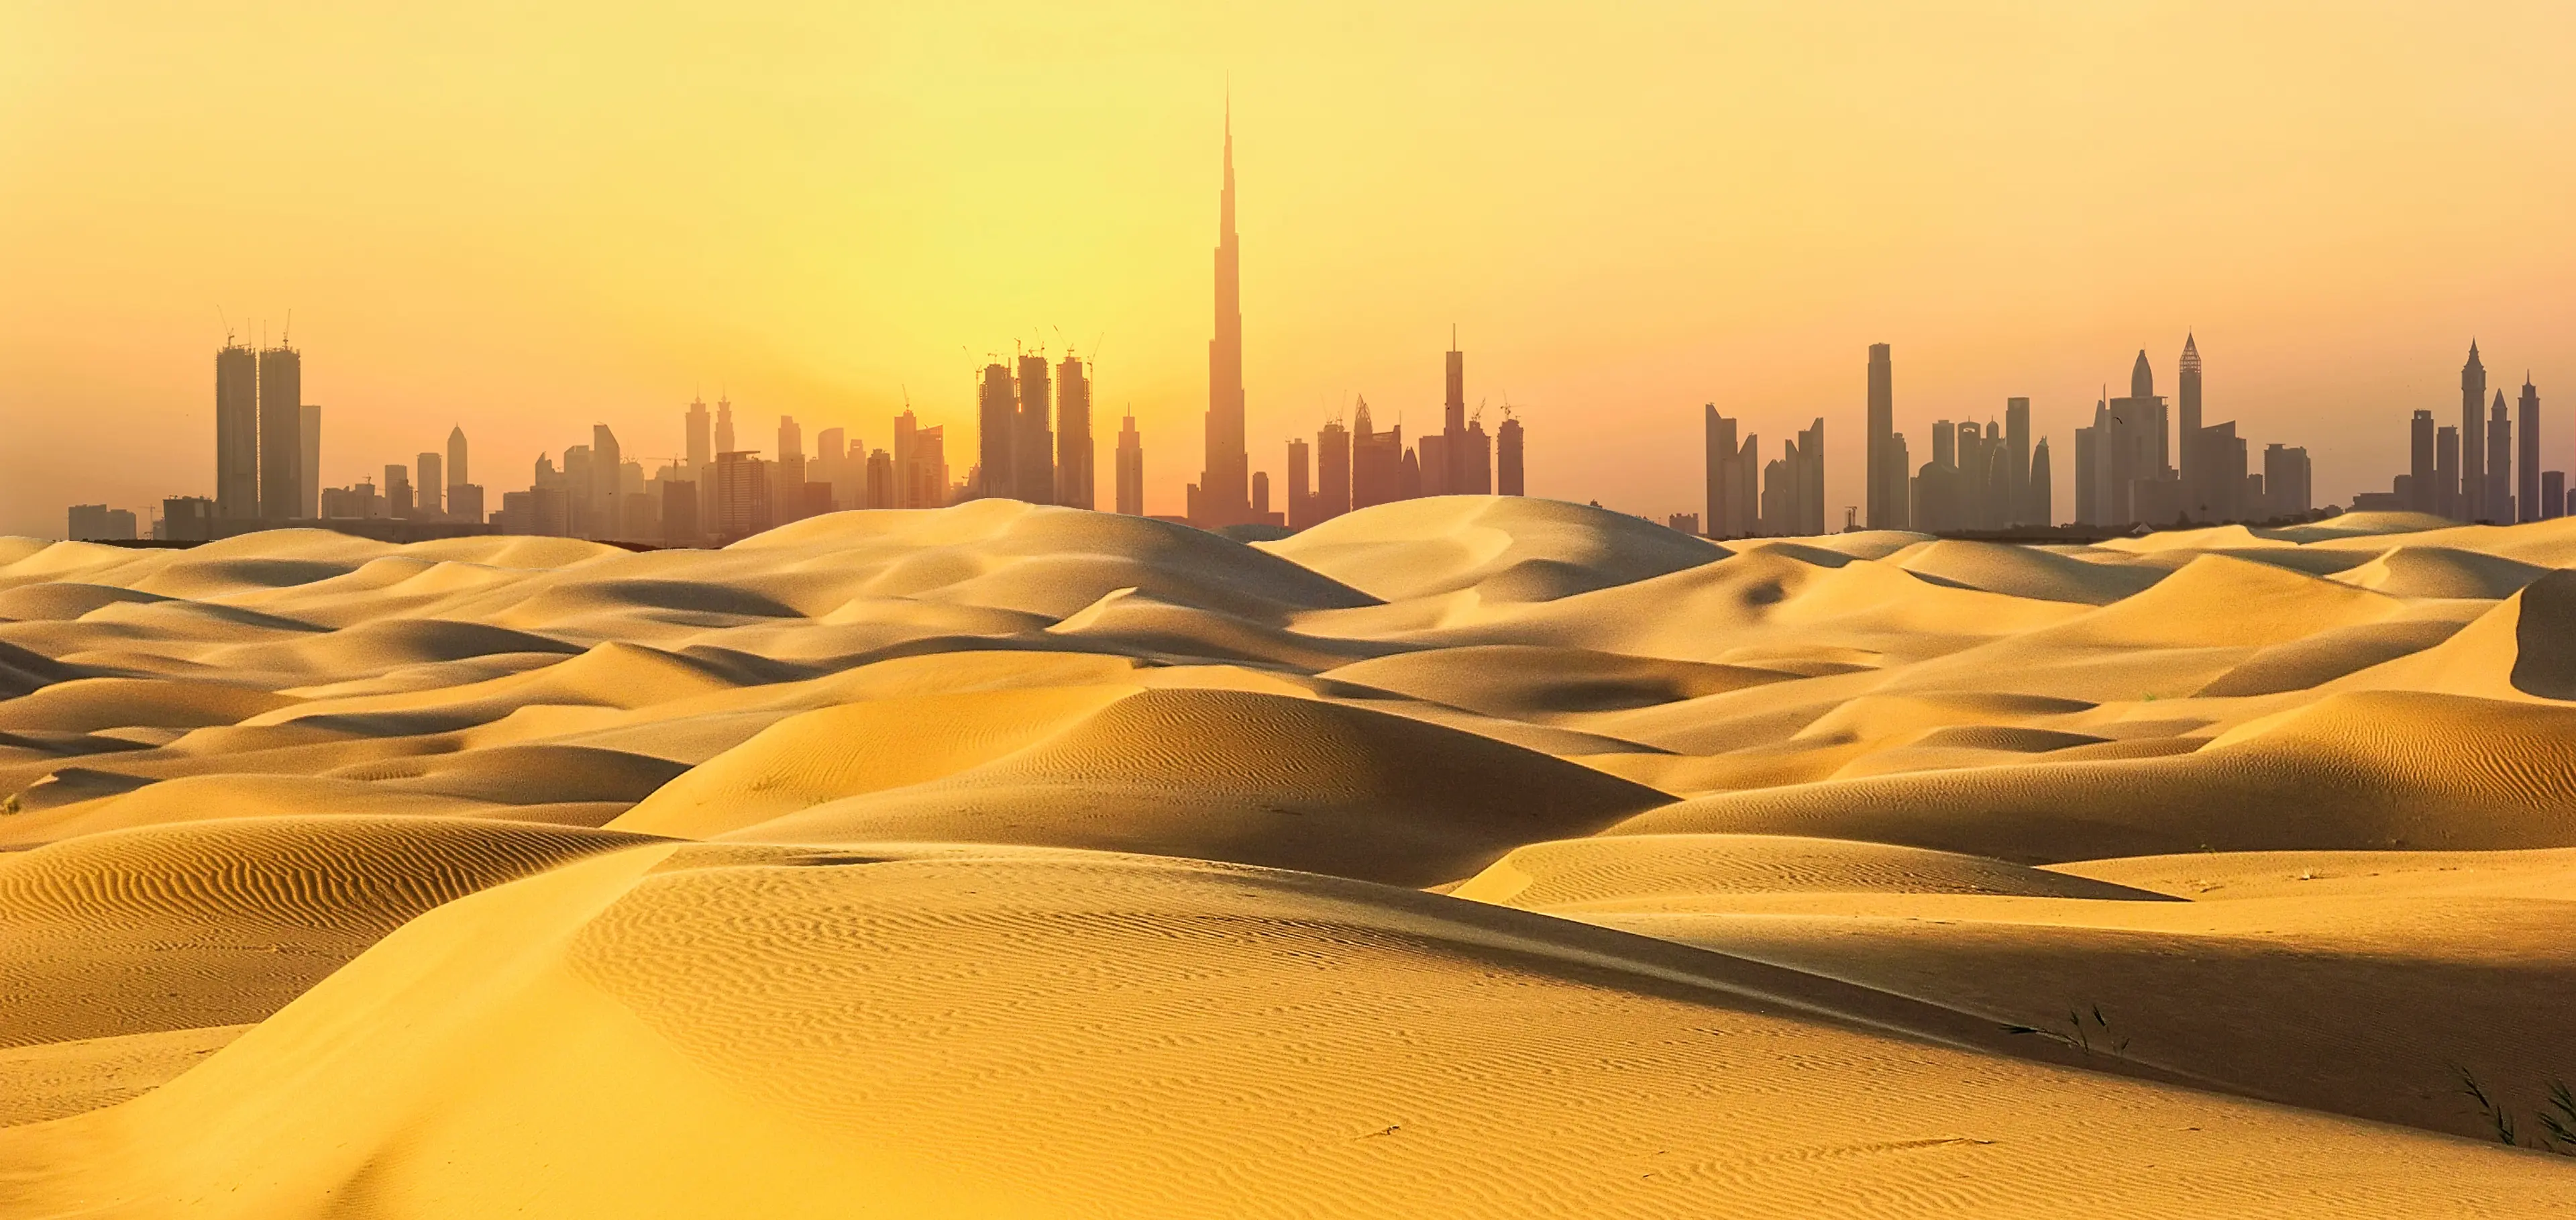 Skyline in desert